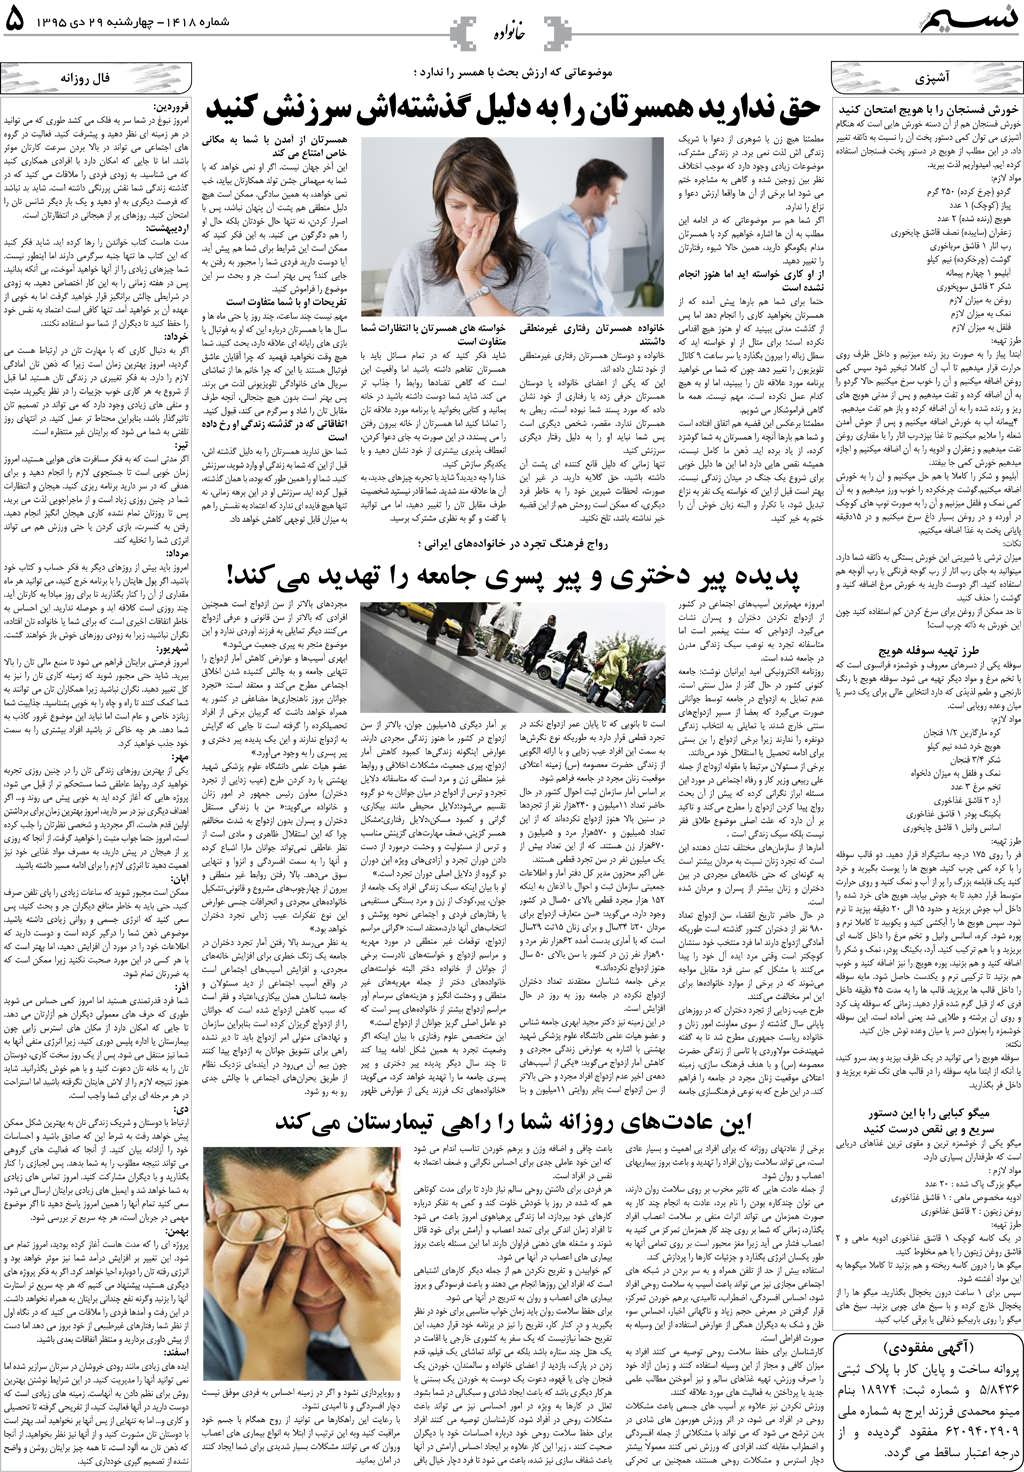 صفحه خانواده روزنامه نسیم شماره 1418